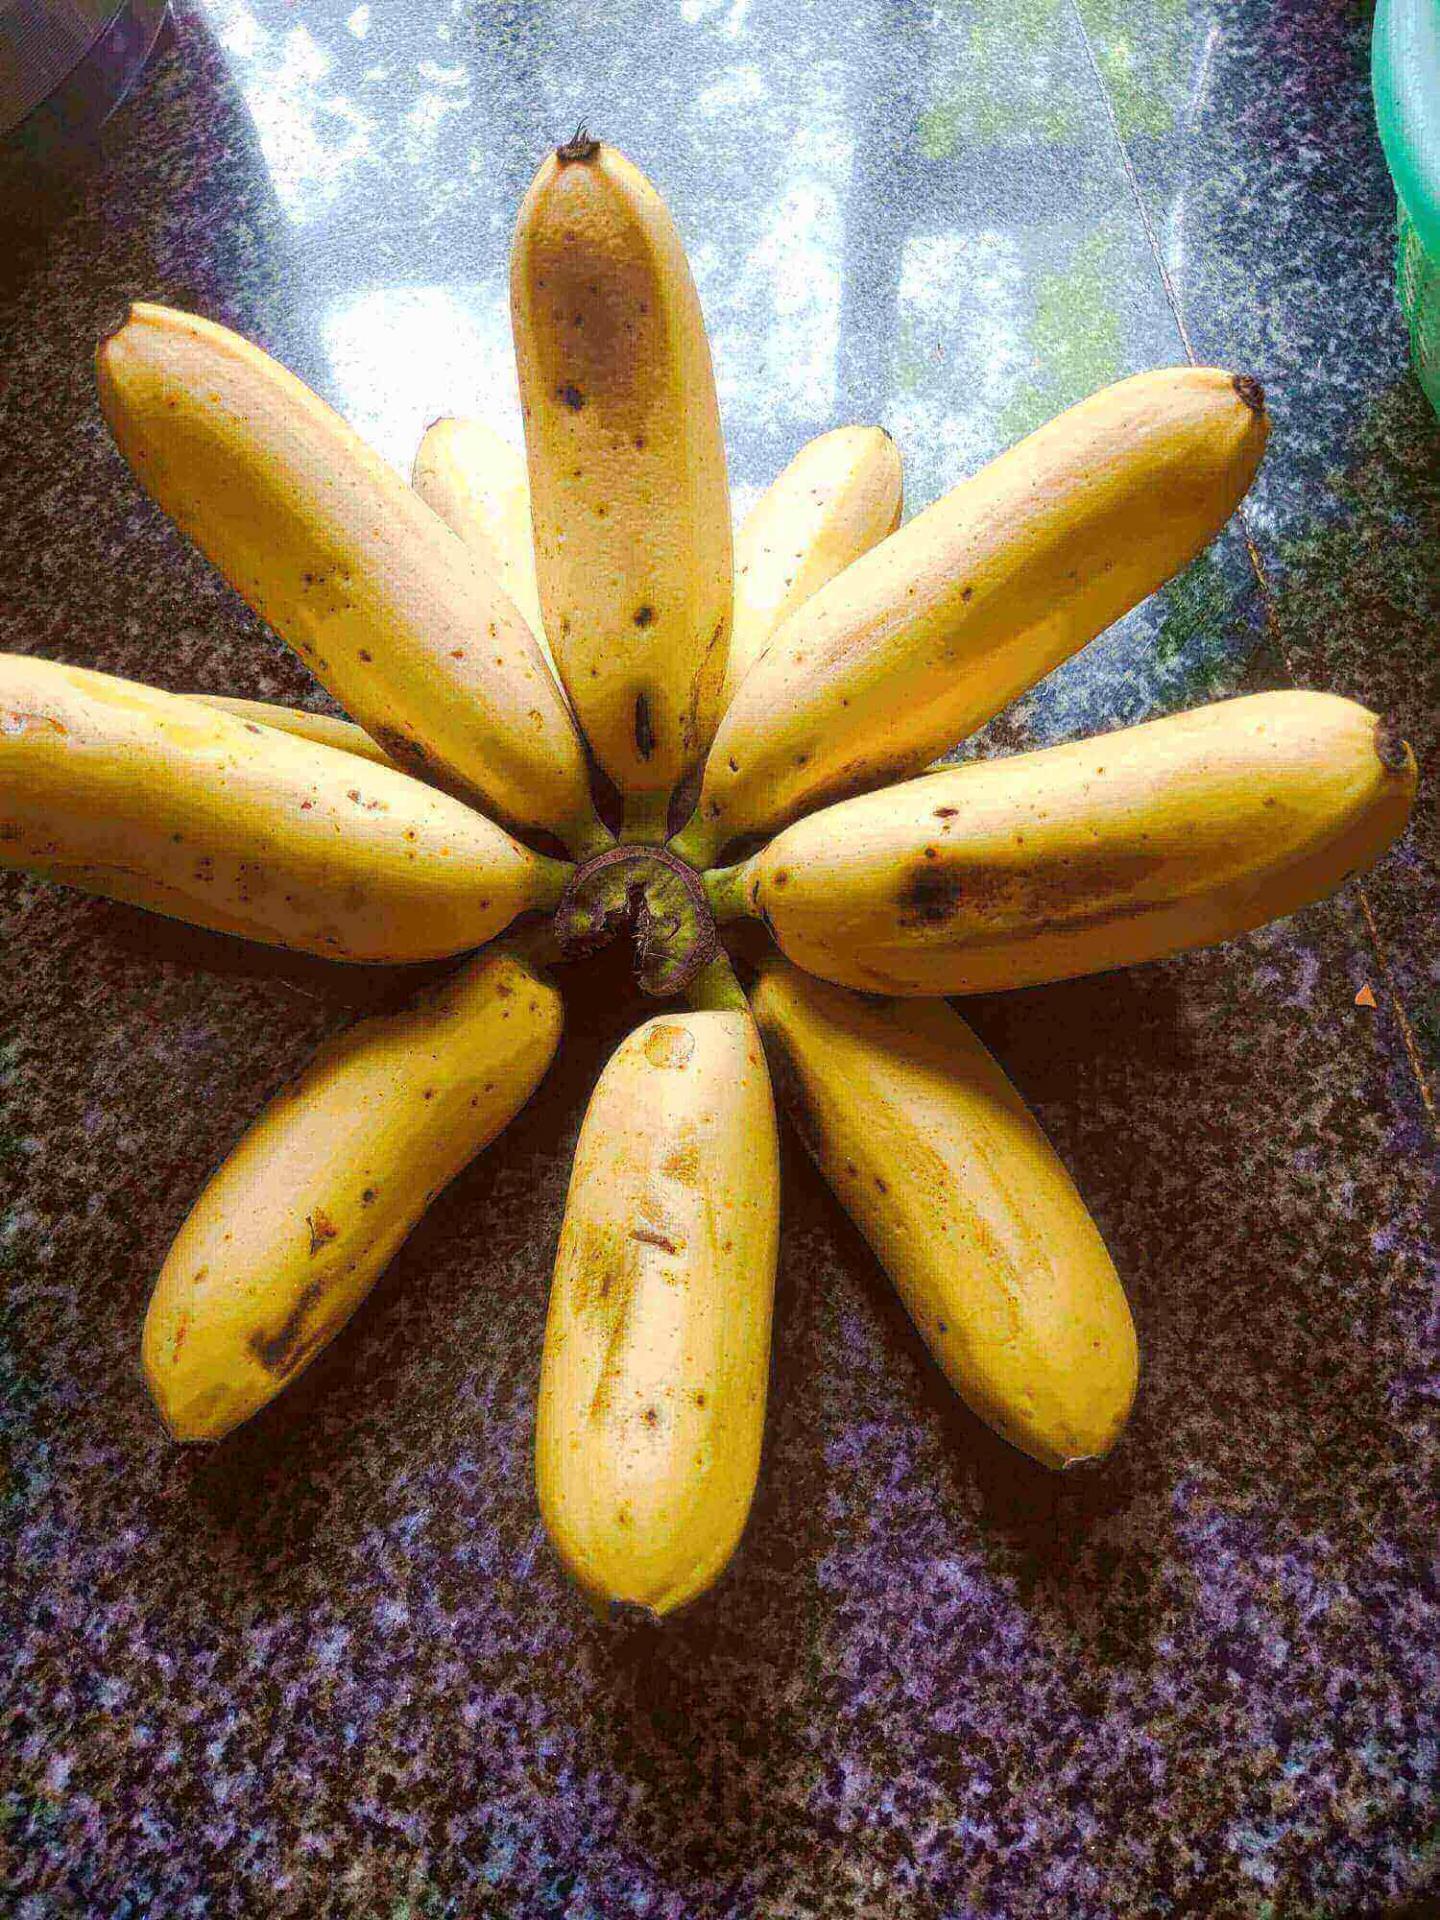 Banana noun 1